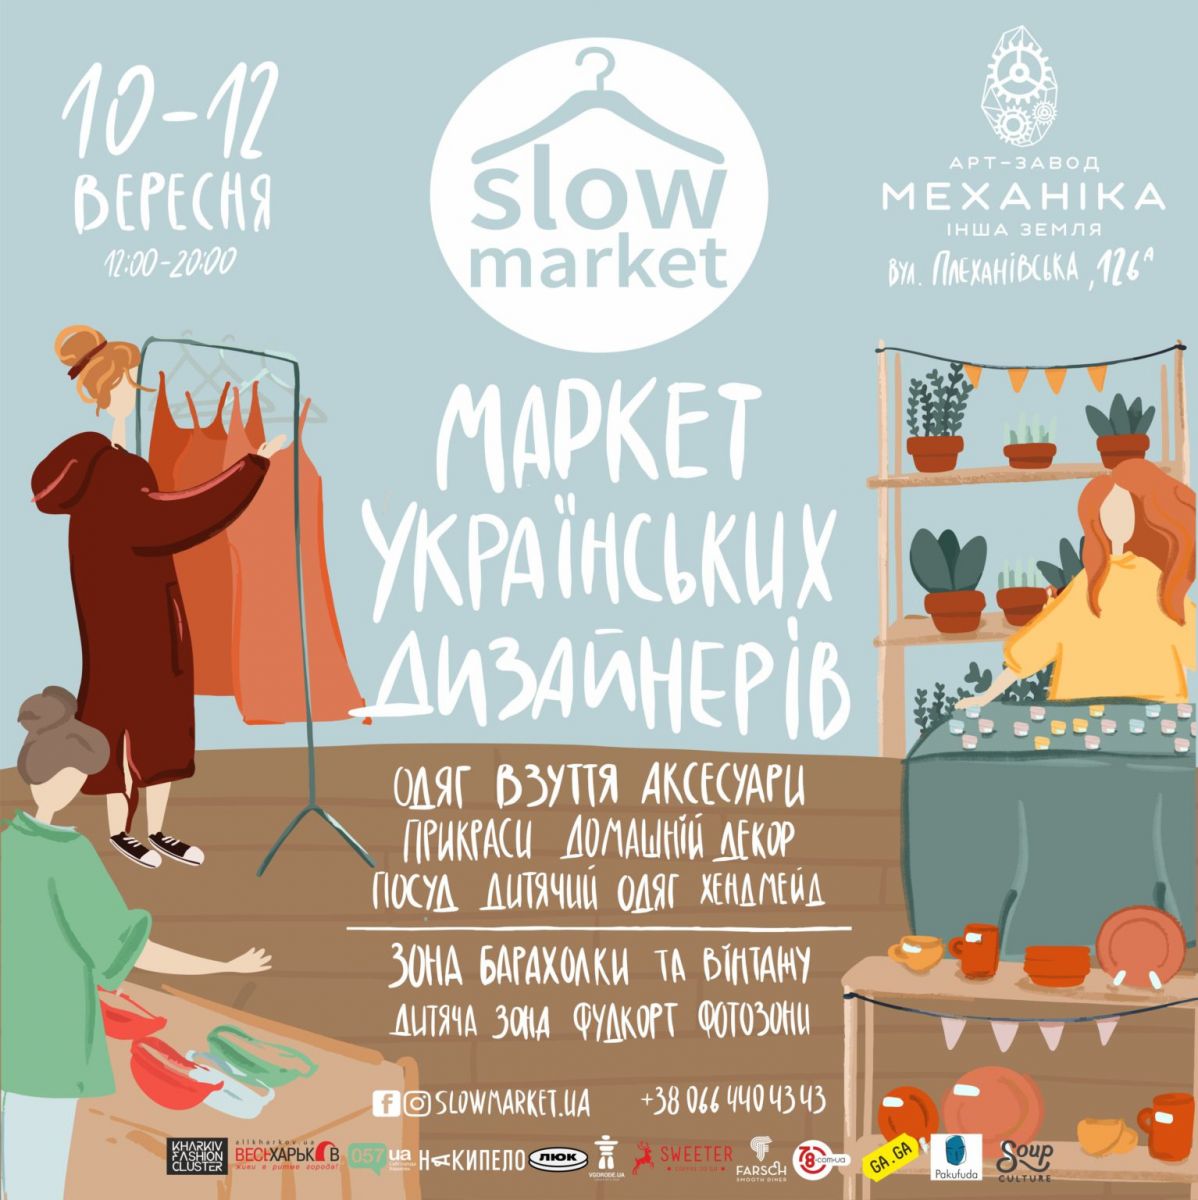 В Харькове с 10 по 12 сентября на арт-заводе «Механика» пройдет уникальный фестиваль Слоумаркет